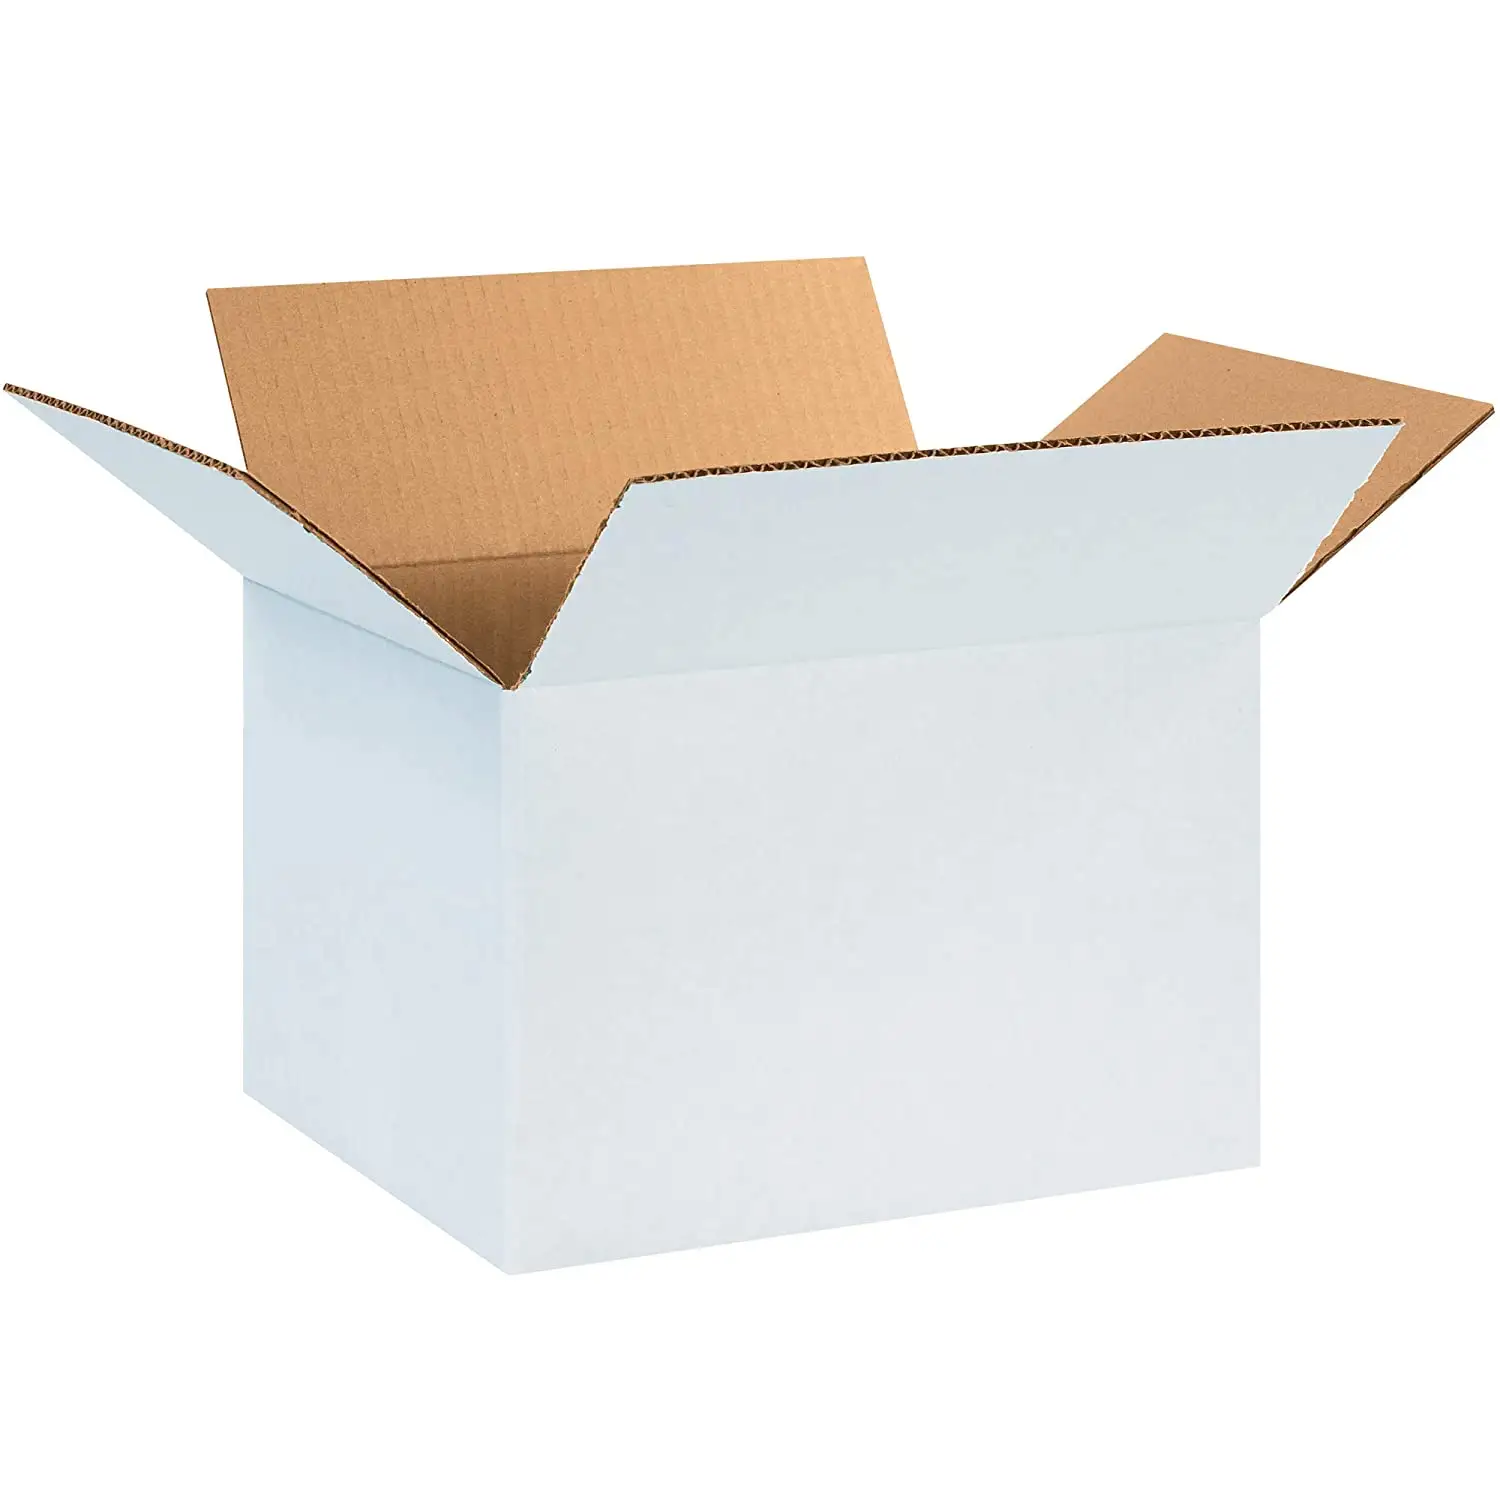 Toptan büyük kraft oluklu kutular özel nakliye ambalaj karton kutu eko ambalaj çift duvar güçlü posta gönderim kutusu